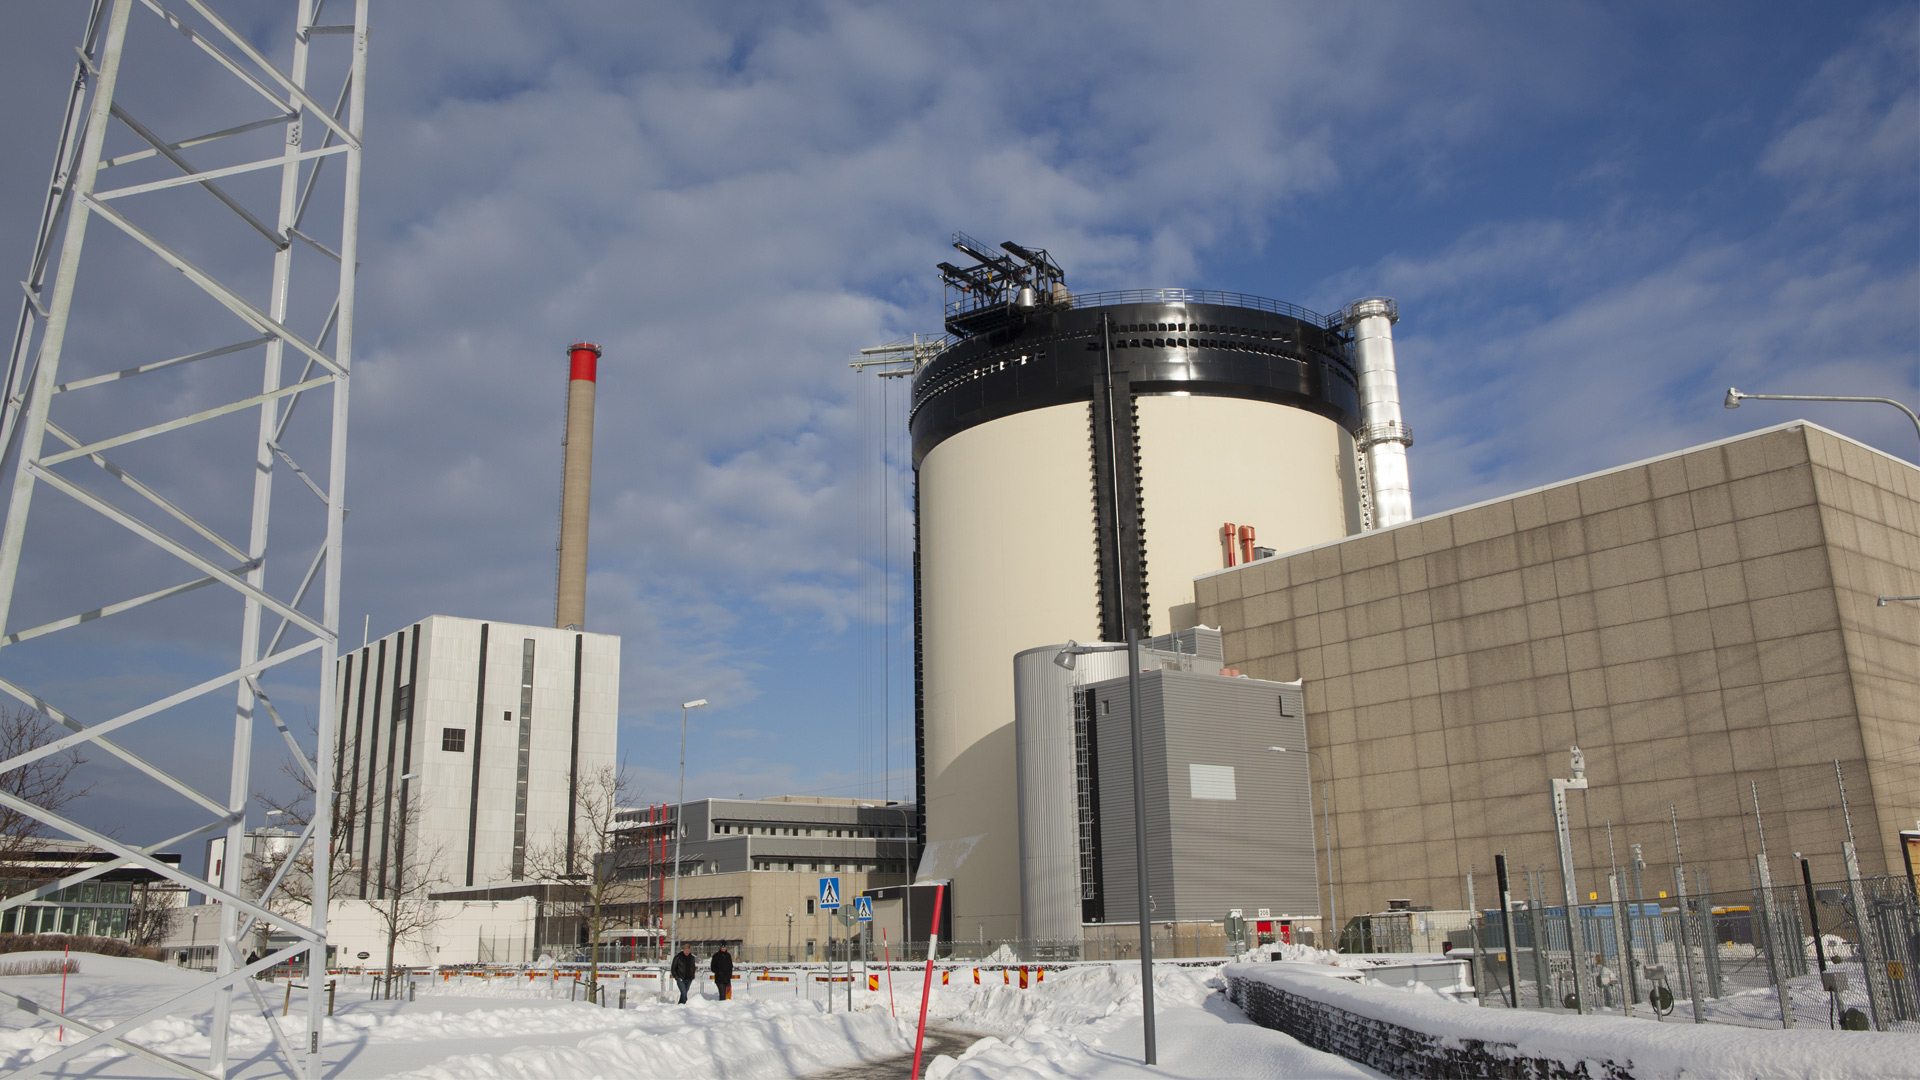 Ringhals kärnkraftverk en vinterdag. Foto: Annika Örnborg